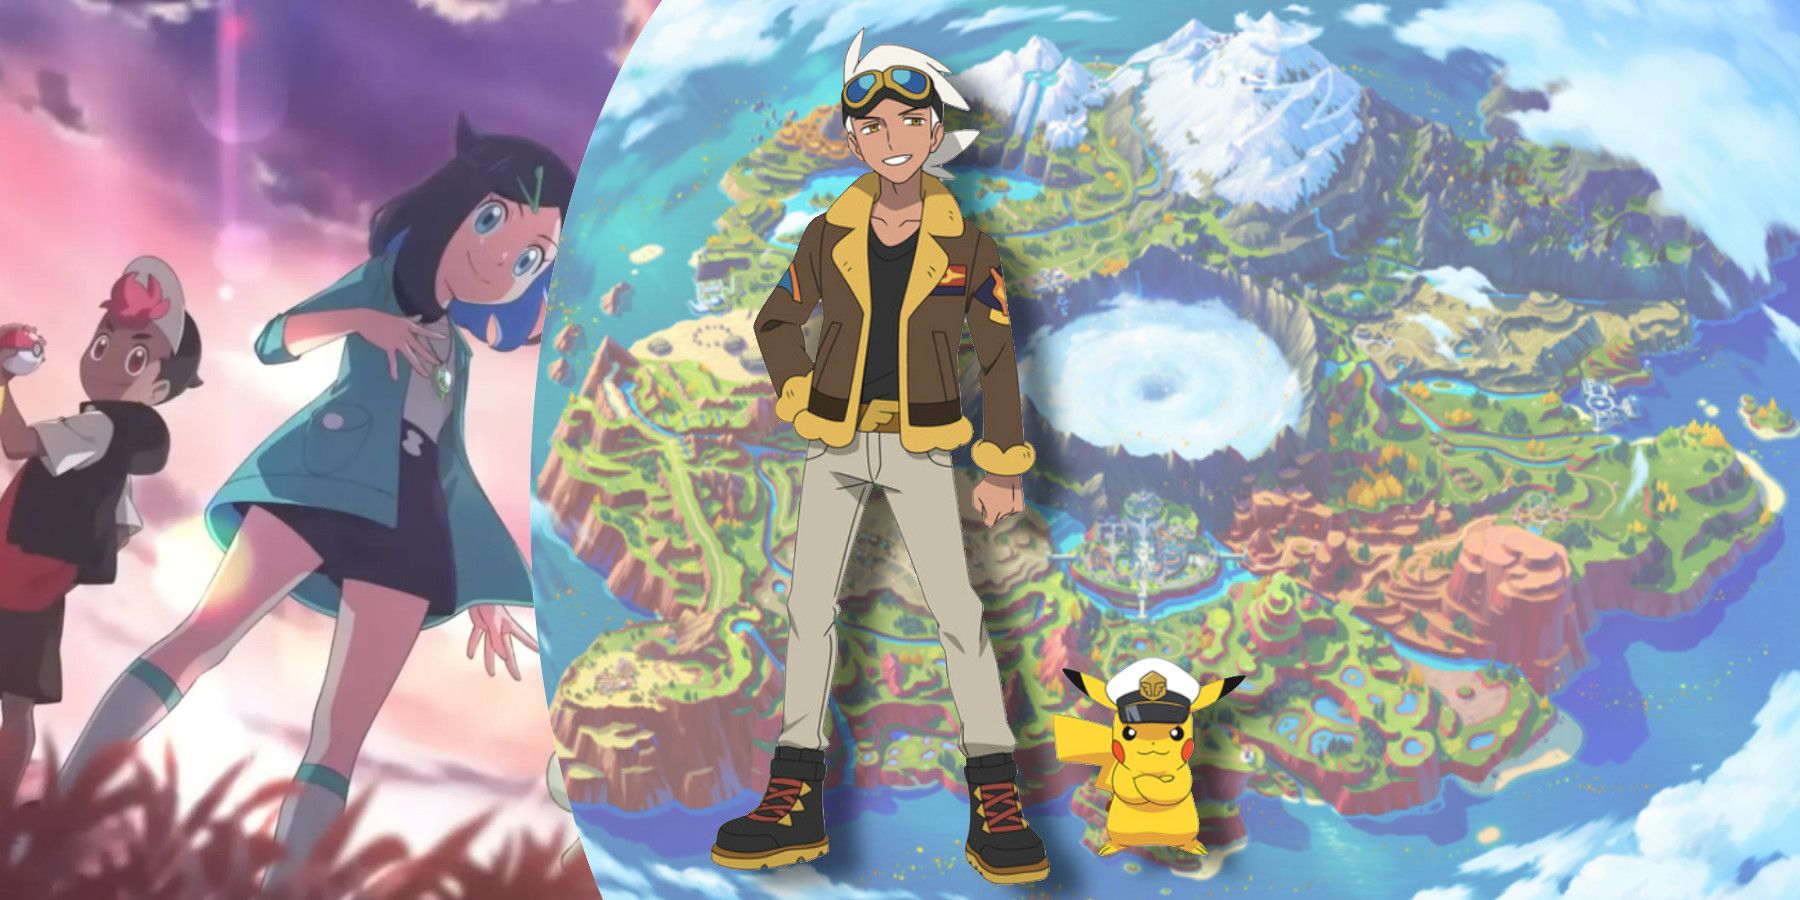 Anime Pokémon - Professor Friede e Capitão Pikachu são Revelados